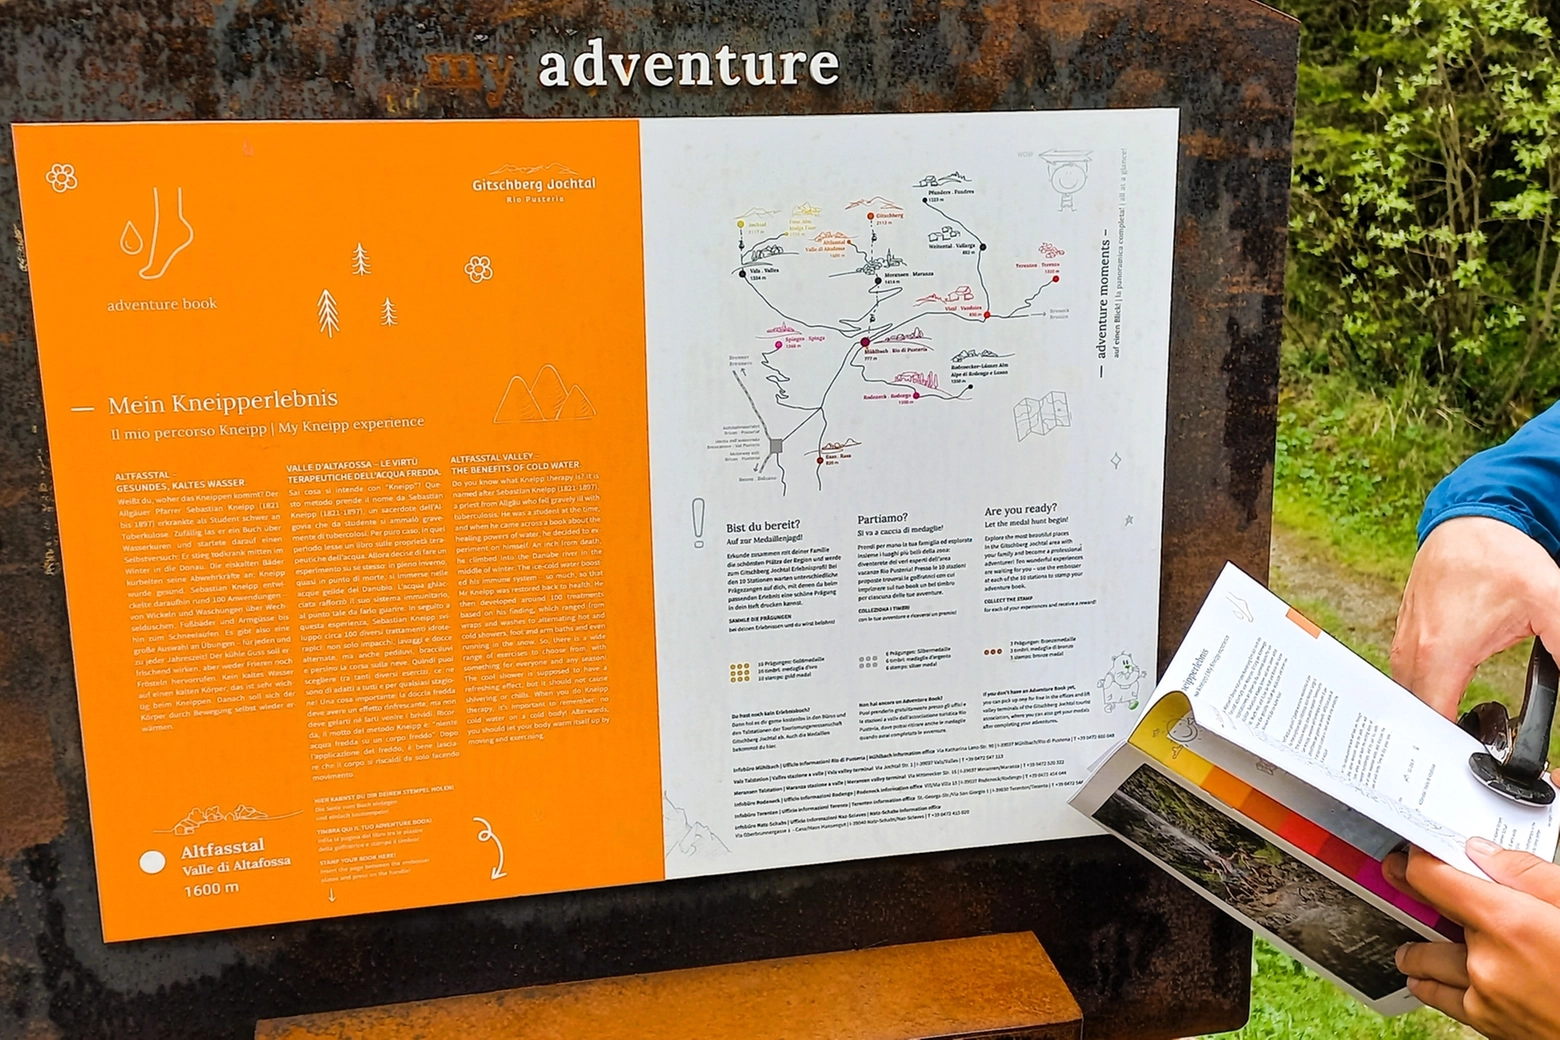 Il timbro ad incisione per segnare di aver completato l'escursione sull'Adventure book